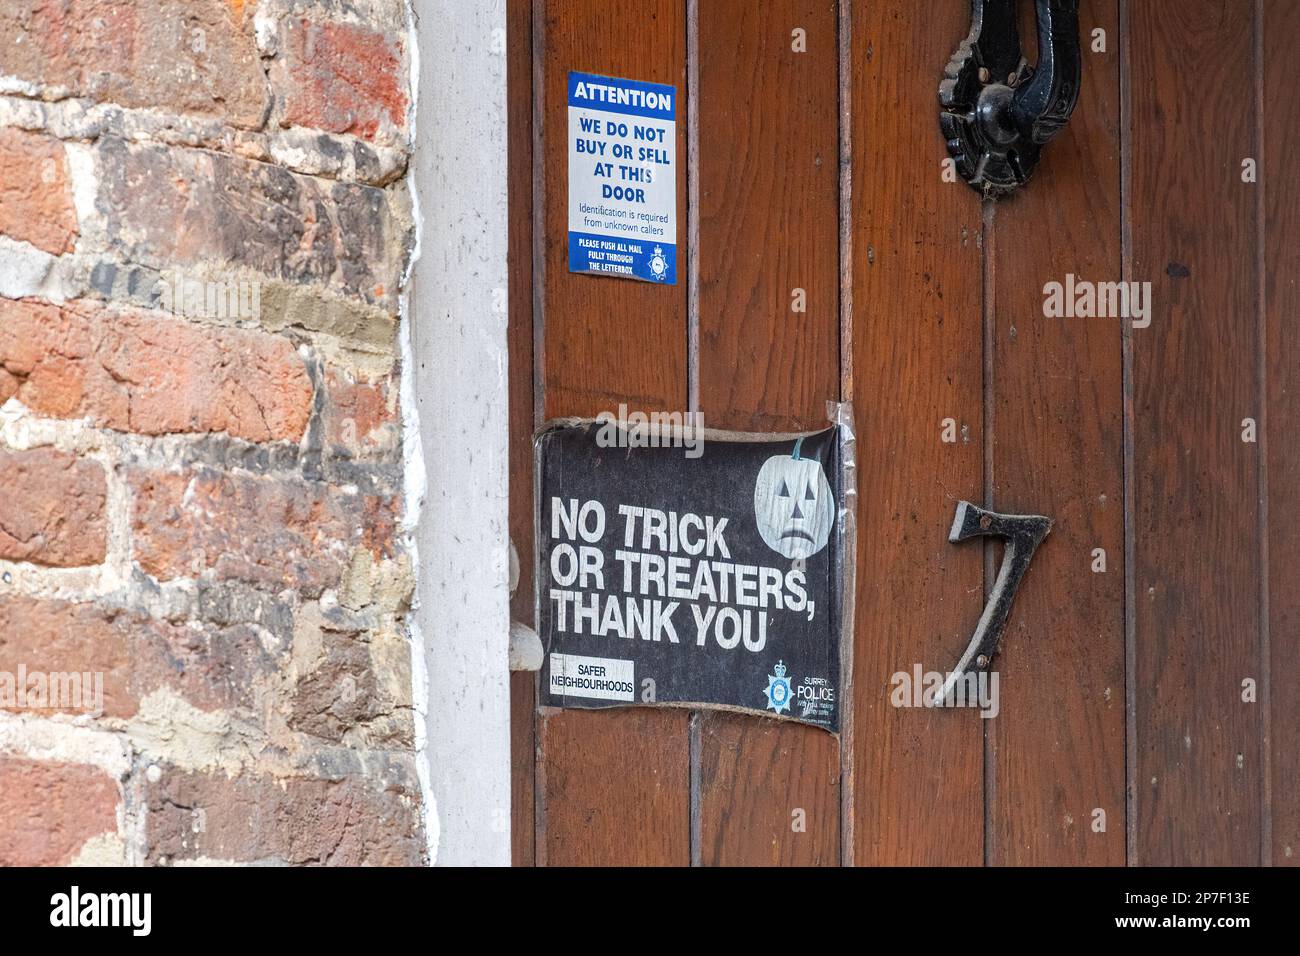 Pegatinas de policía de Surrey en una puerta principal que dice 'No Trick or Treaters' y 'No compramos o vendemos en esta puerta', seguridad en el hogar para personas vulnerables, Reino Unido Foto de stock